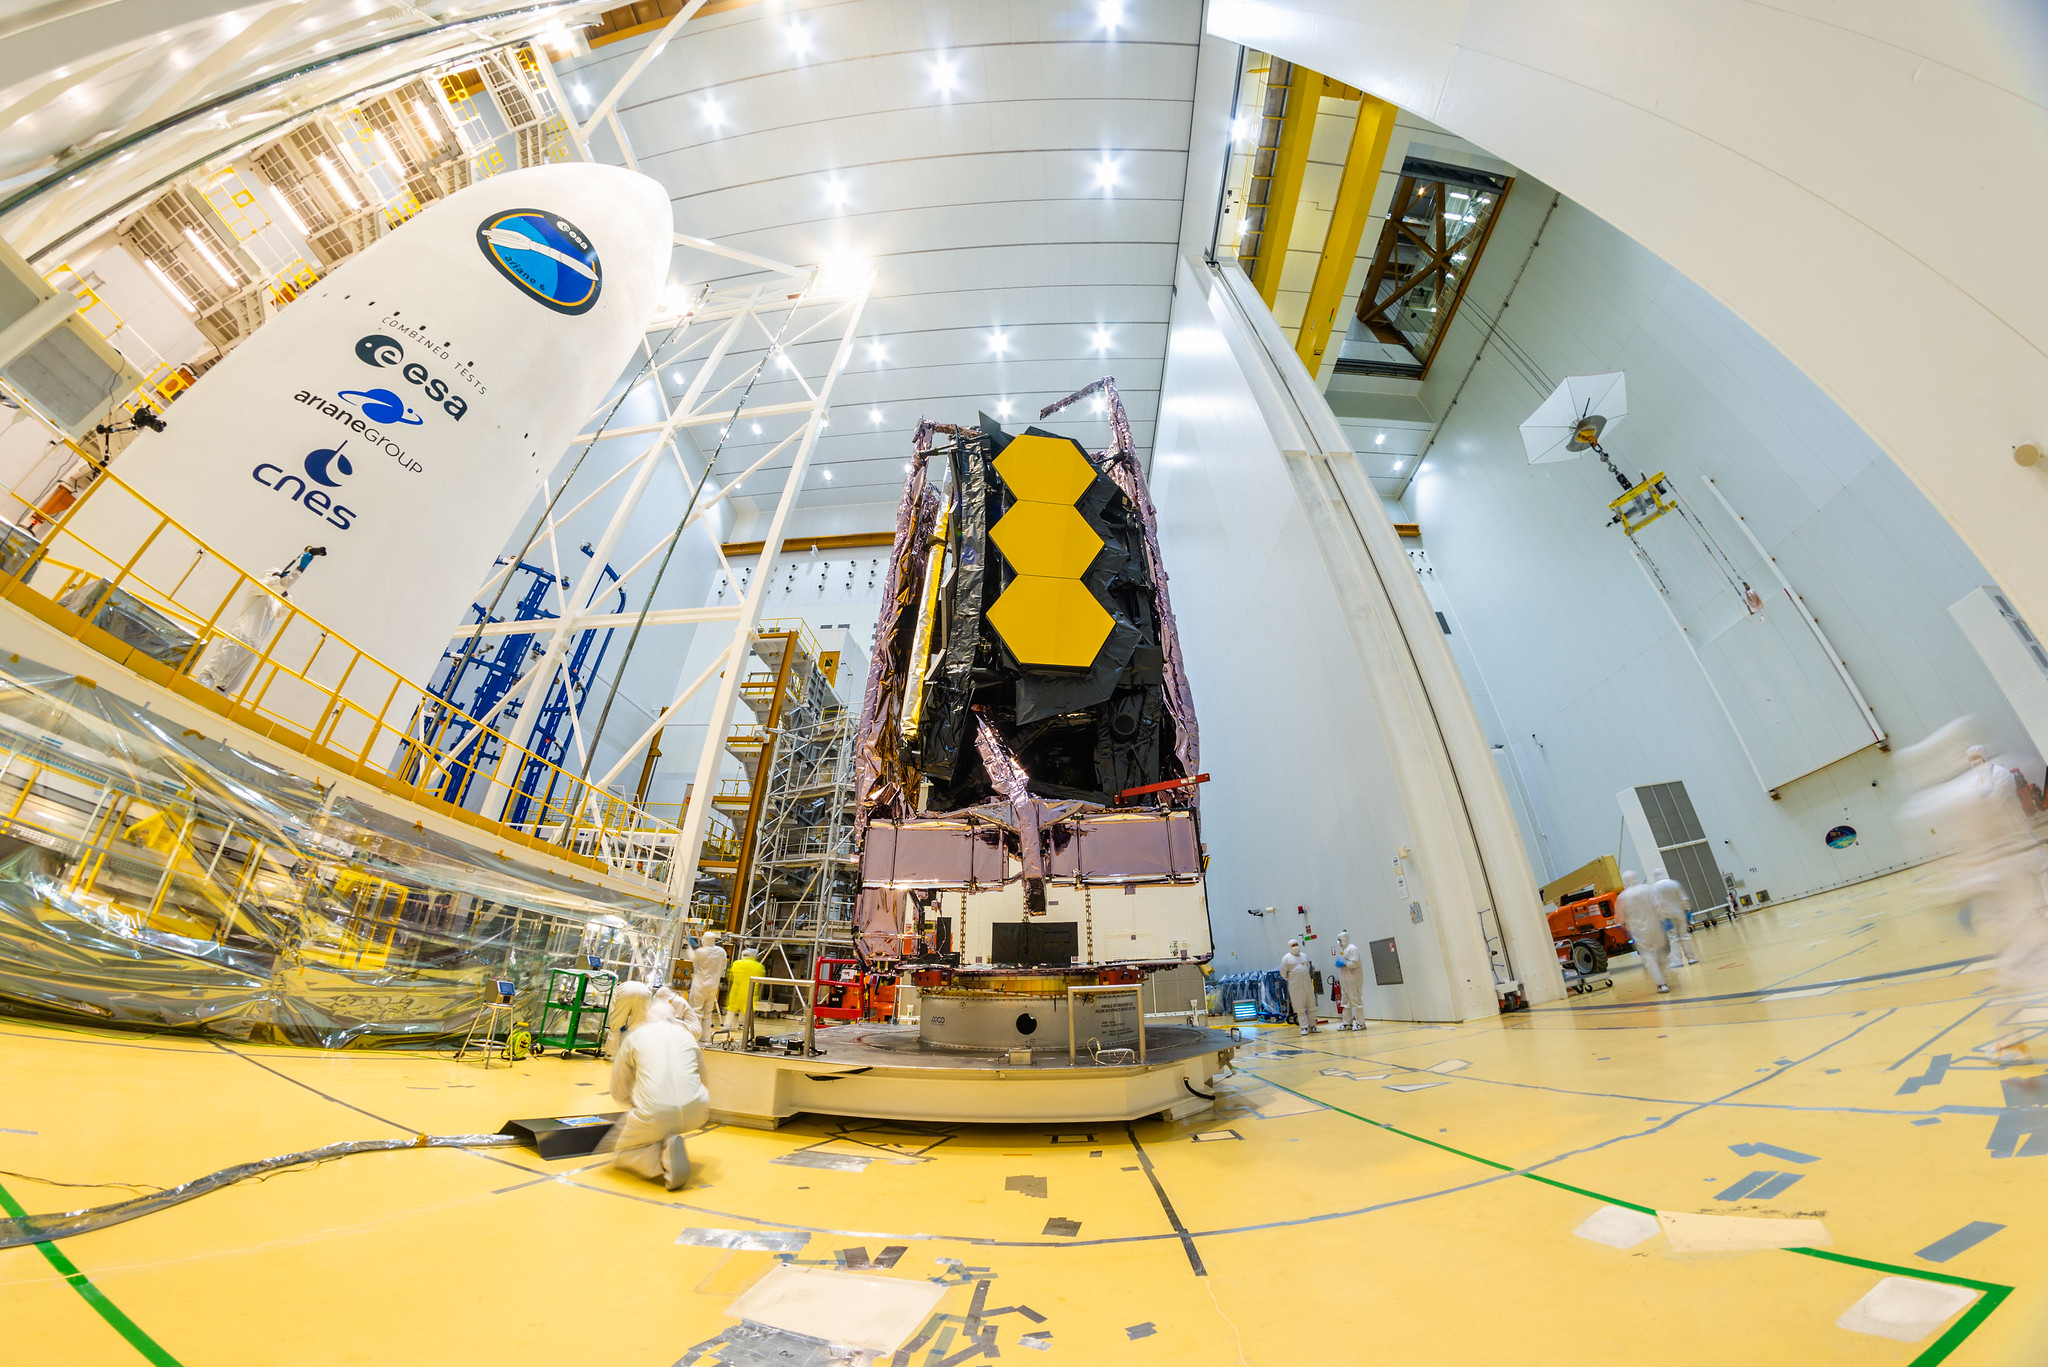 في يوم السبت ، 11 ديسمبر ، تم وضع تلسكوب جيمس ويب الفضائي التابع لناسا بأمان فوق صاروخ آريان 5 الذي تم إطلاقه في الفضاء من ميناء الفضاء الأوروبي في غيانا الفرنسية.